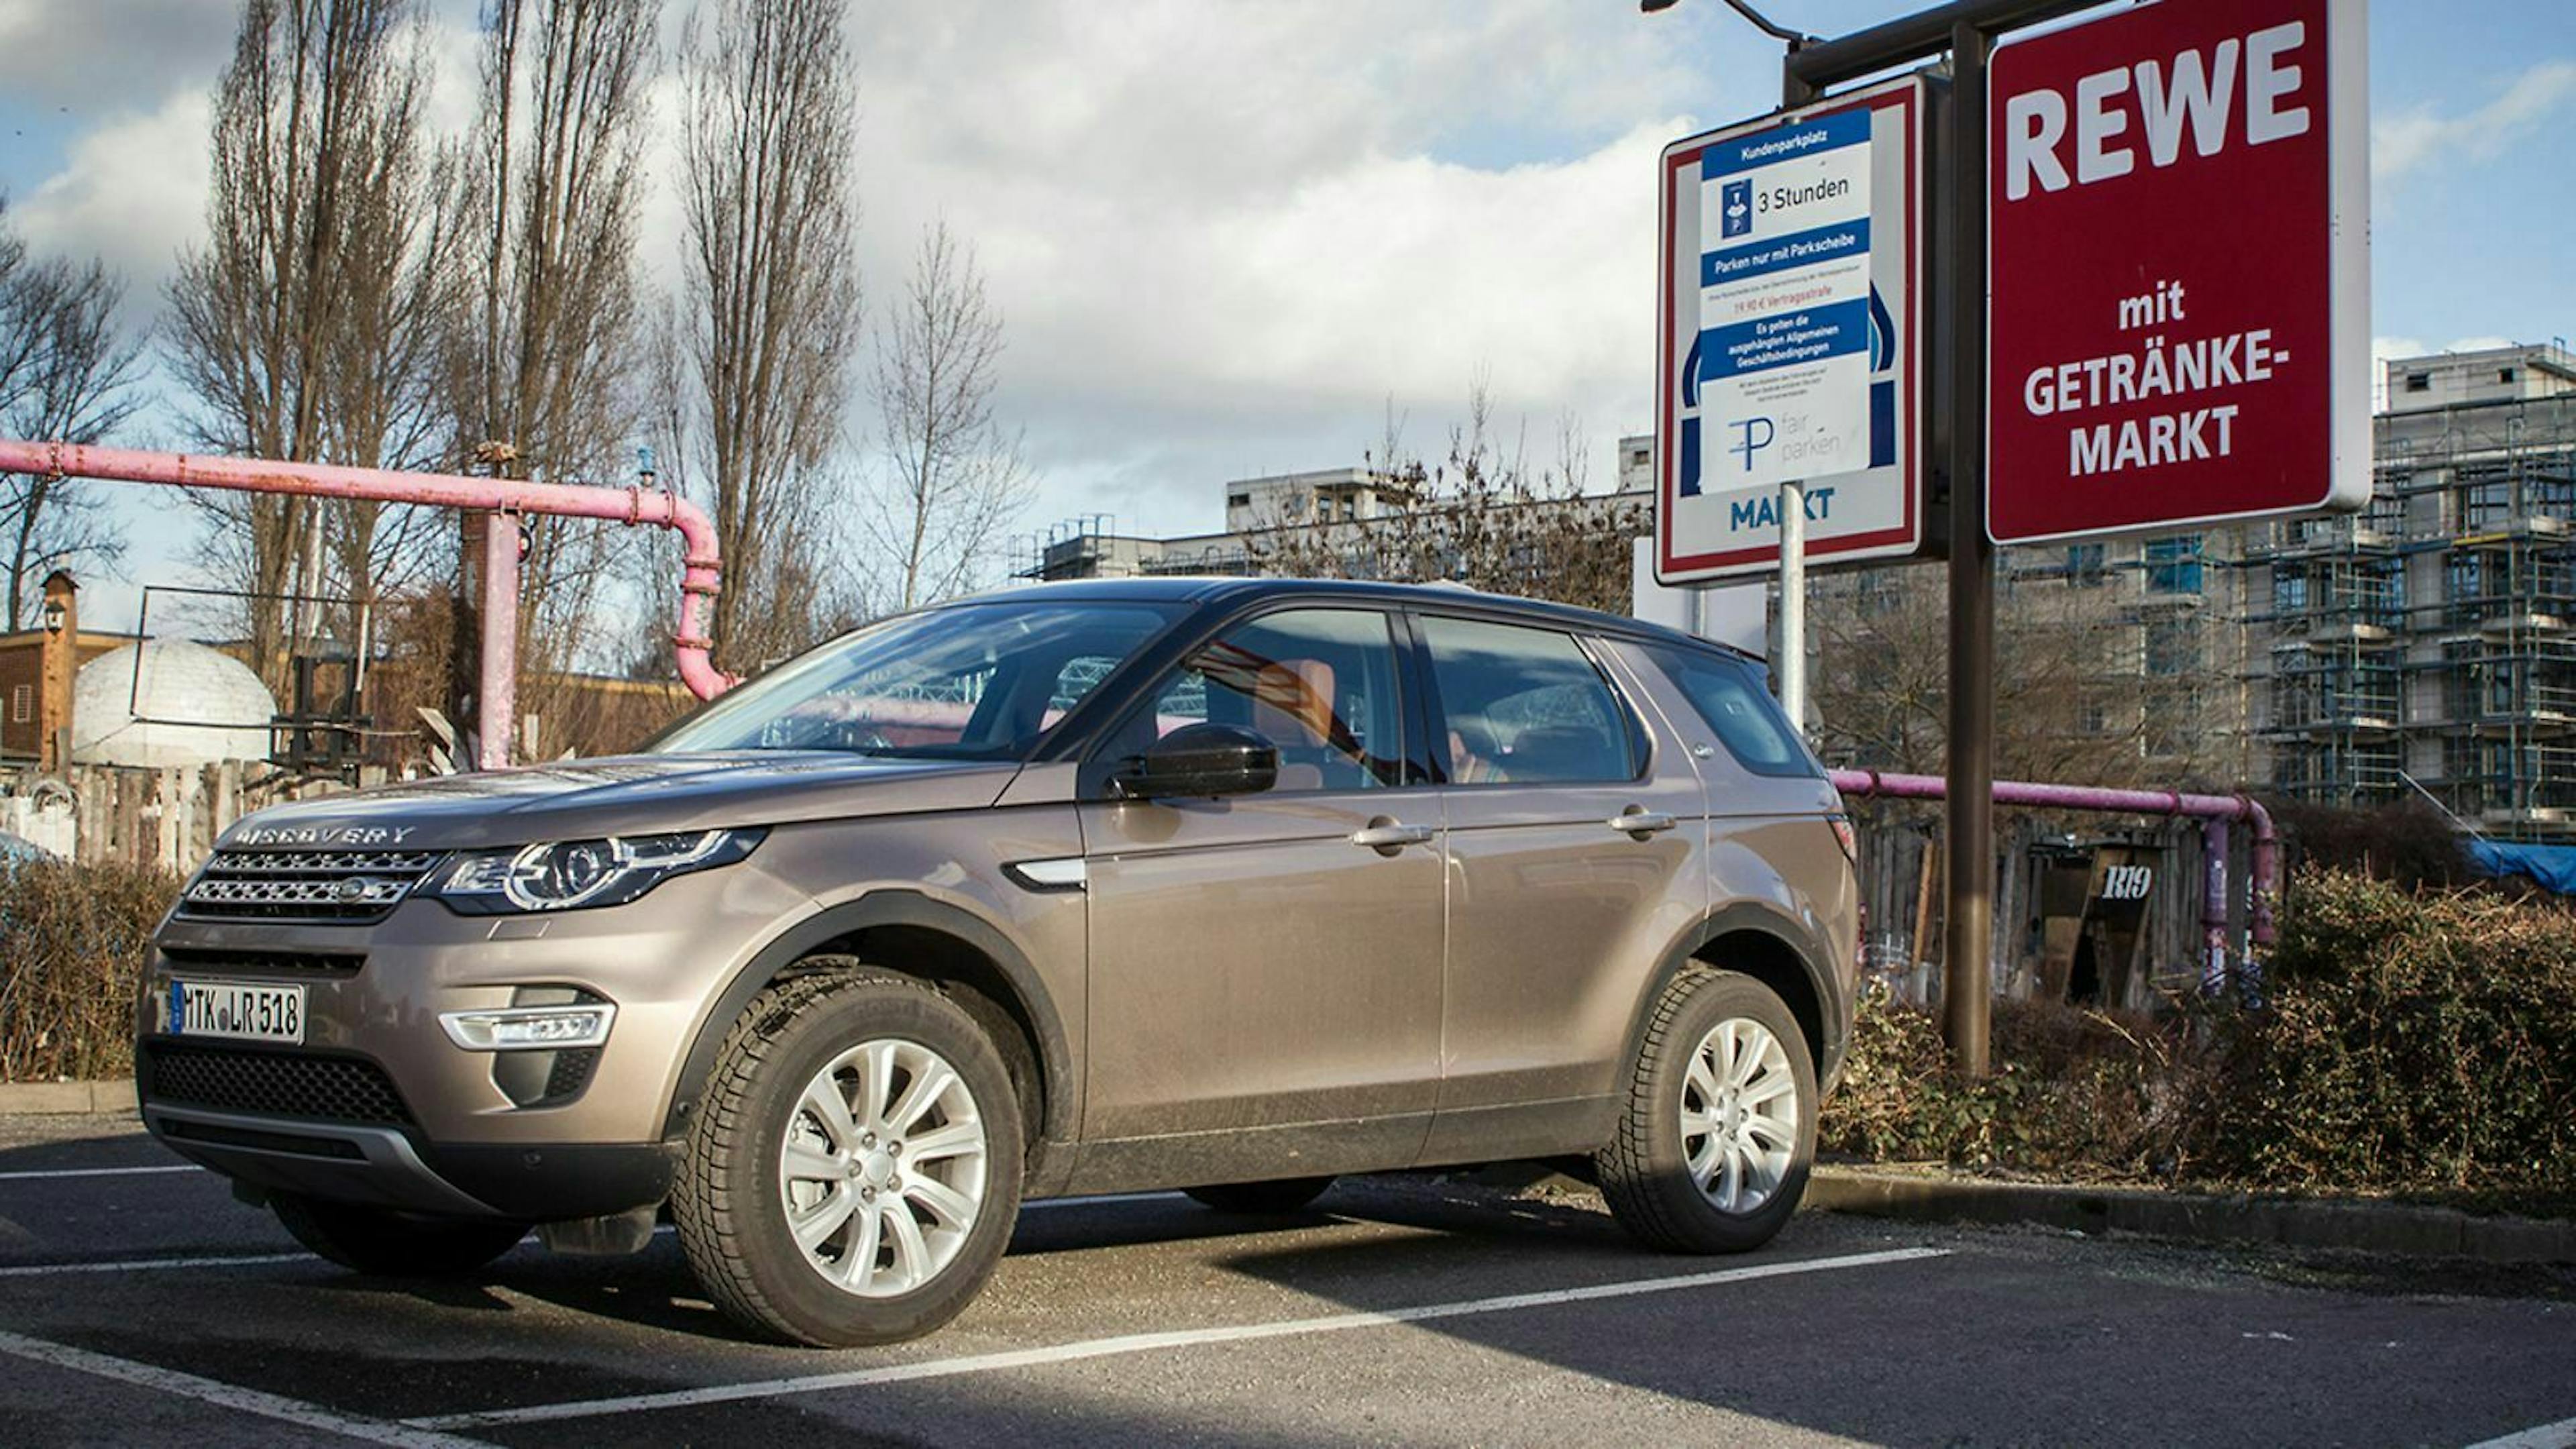 Land Rover parkt auf einem Rewe-Parkplatz